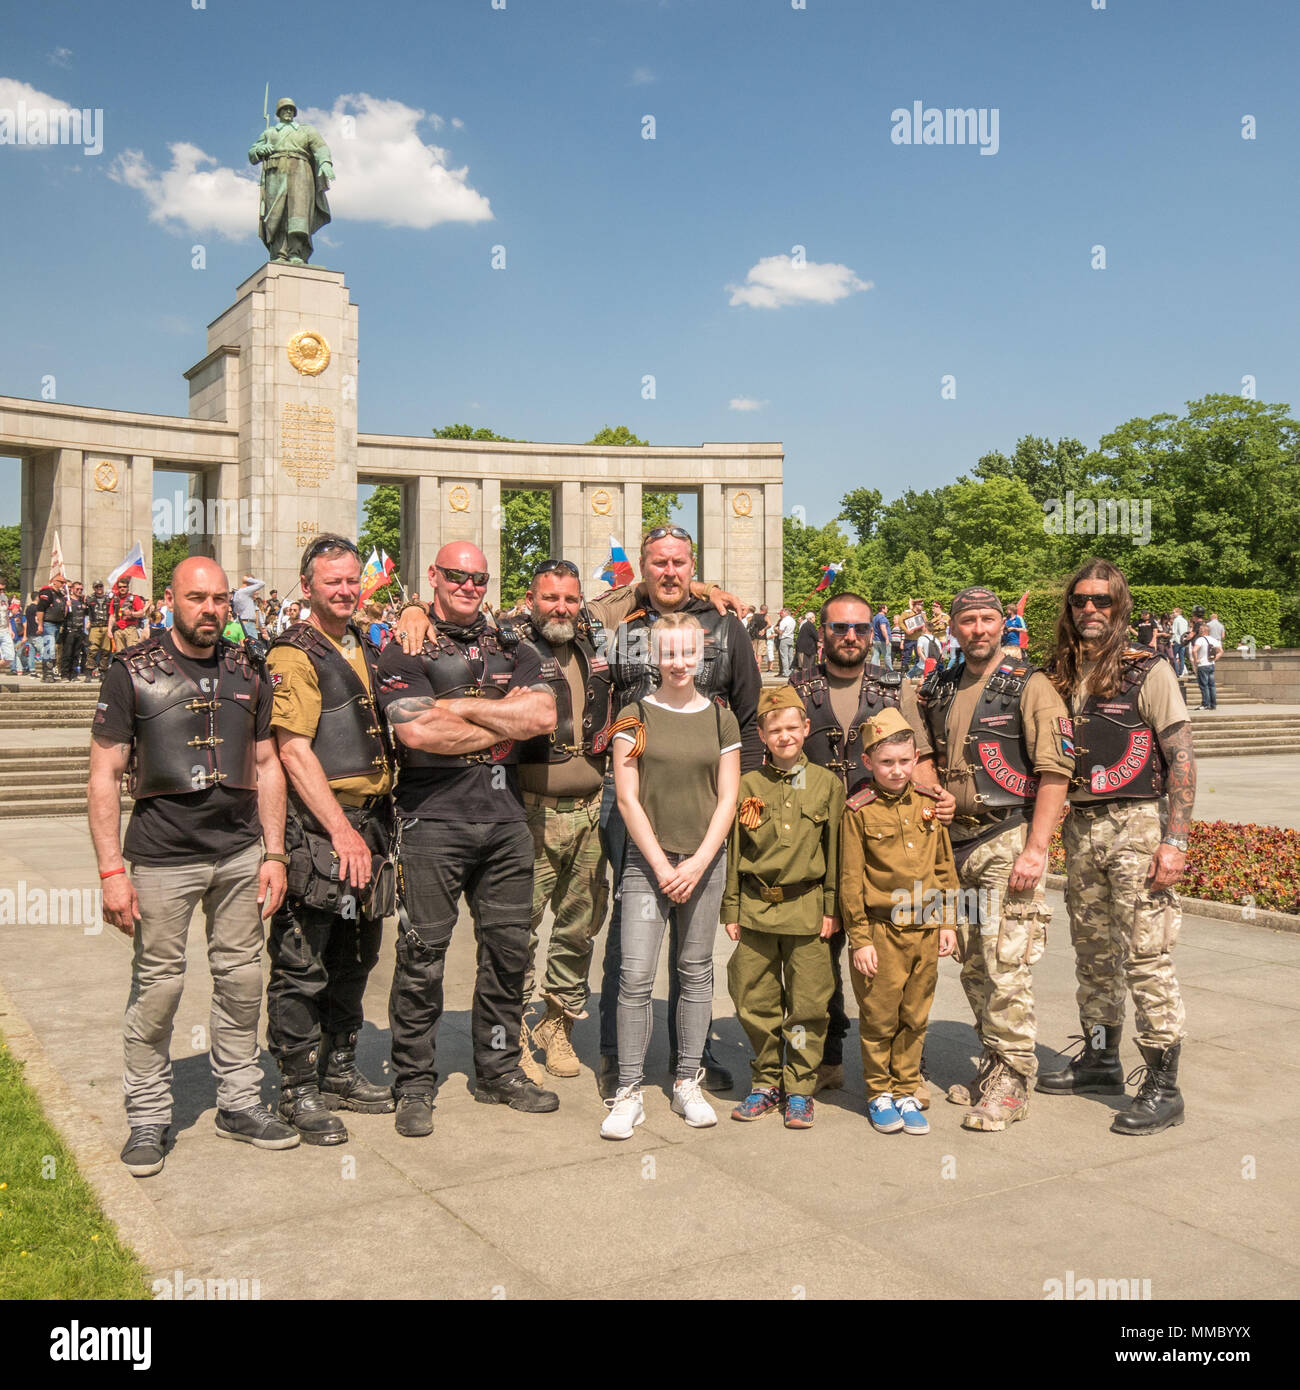 Soviet War Memorial in the Tiergarten, Berlin, Germany Stock Photo